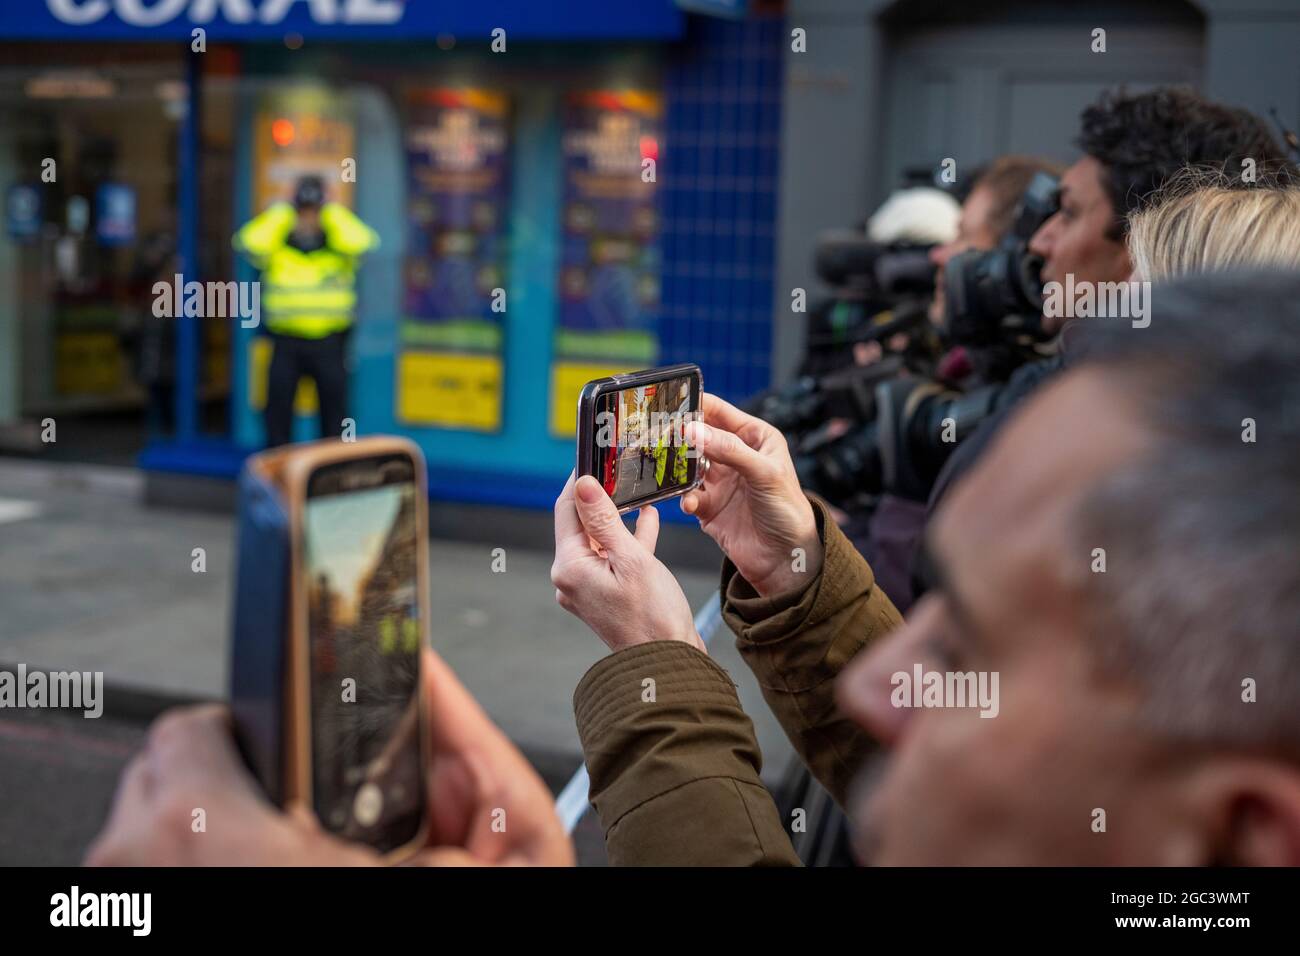 Testigos presenciales y medios de comunicación que graban actividades policiales durante el ataque terrorista del Puente de Londres, el 29 de Novemebbr 2019,Londres,Inglaterra Foto de stock